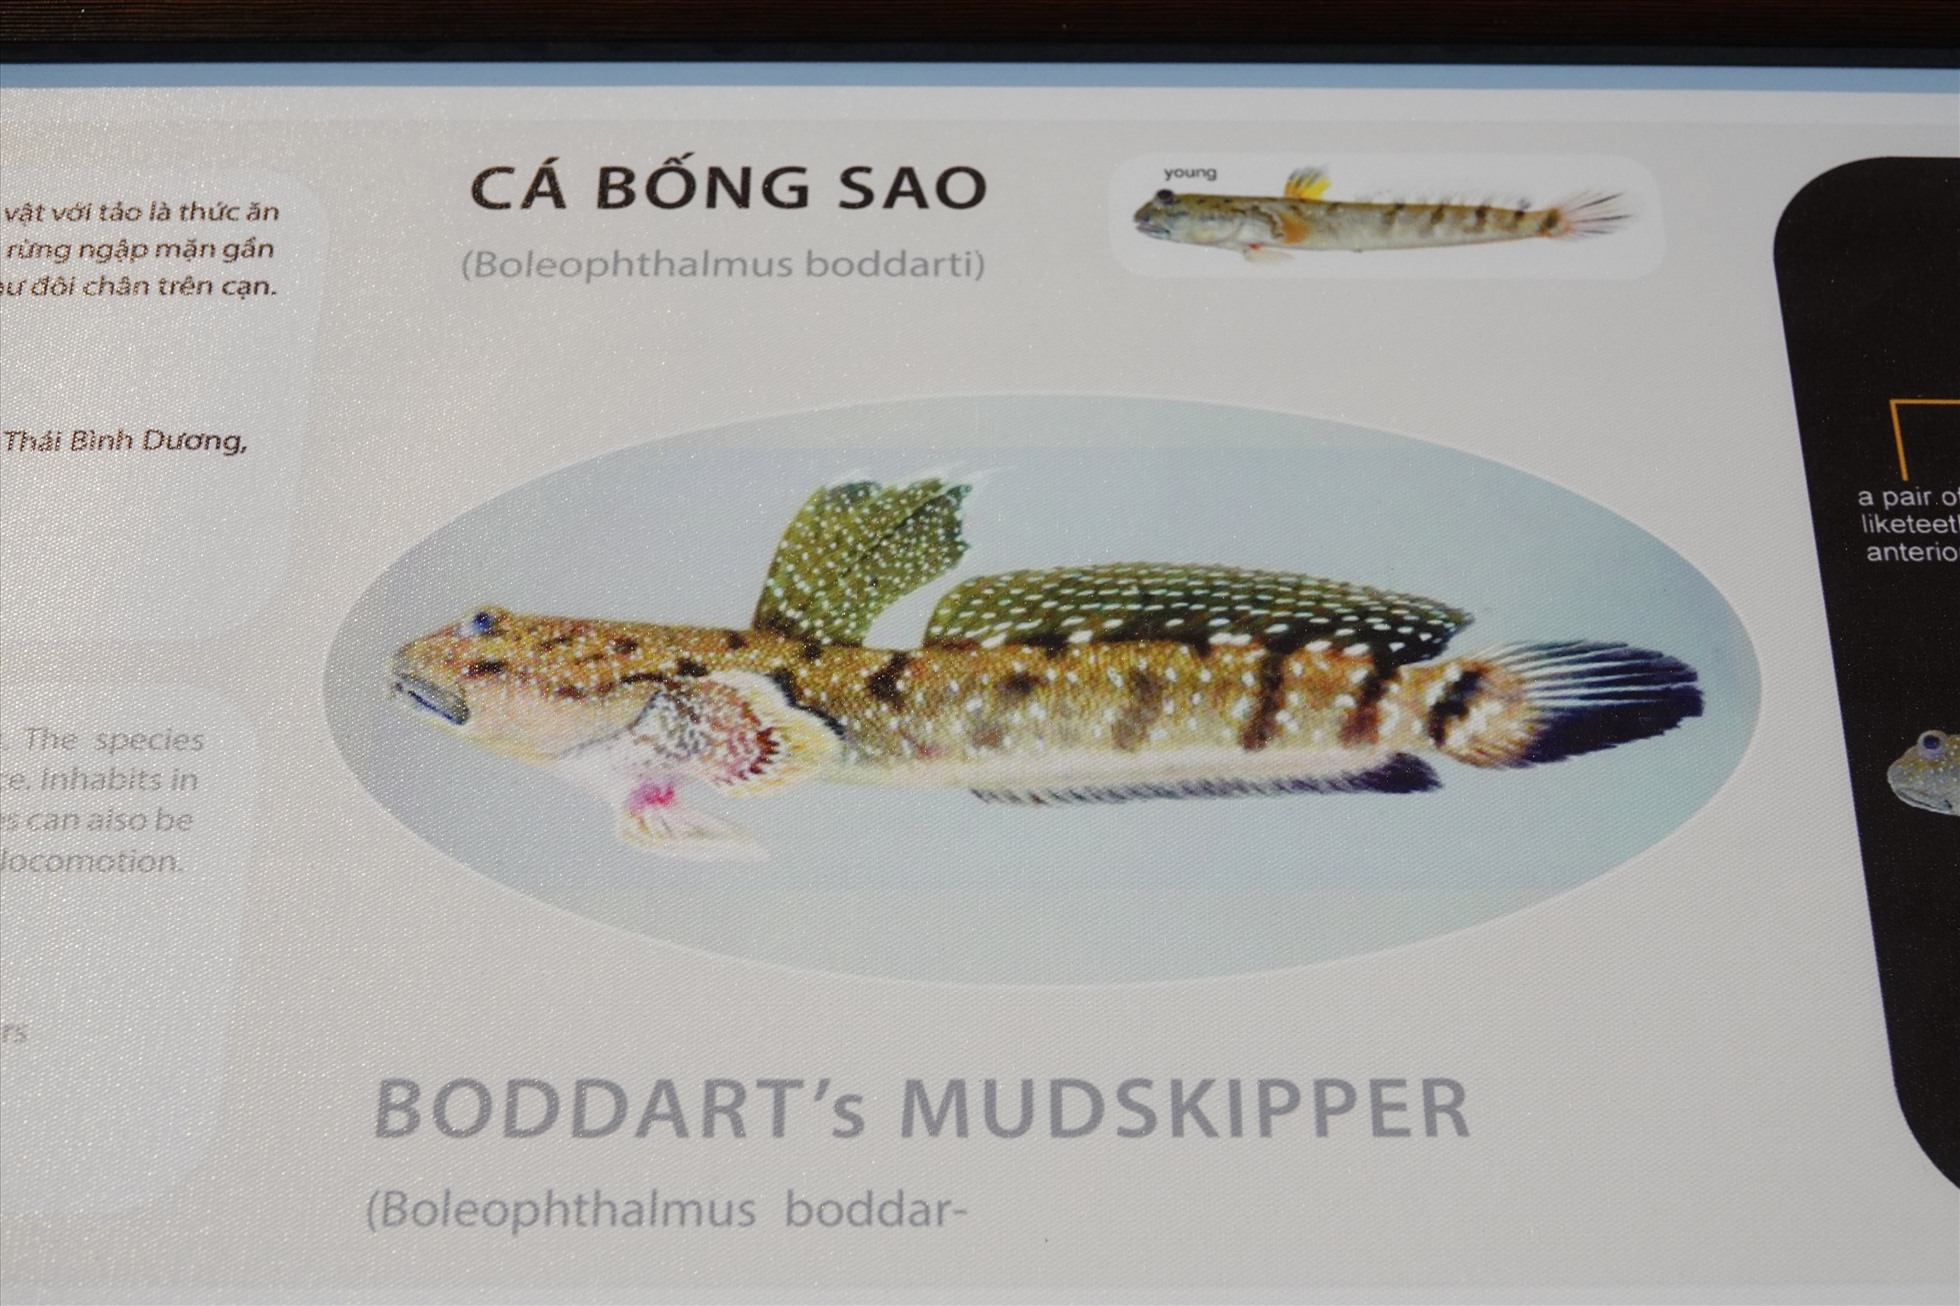 Đặc biệt, thông tin các loài cá được tổng hợp bằng cả 2 ngôn ngữ tiếng Việt và tiếng Anh, kèm theo là các bảng biểu giới thiệu về đặc tính của các loài để giới thiệu với du khách trong và ngoài nước.